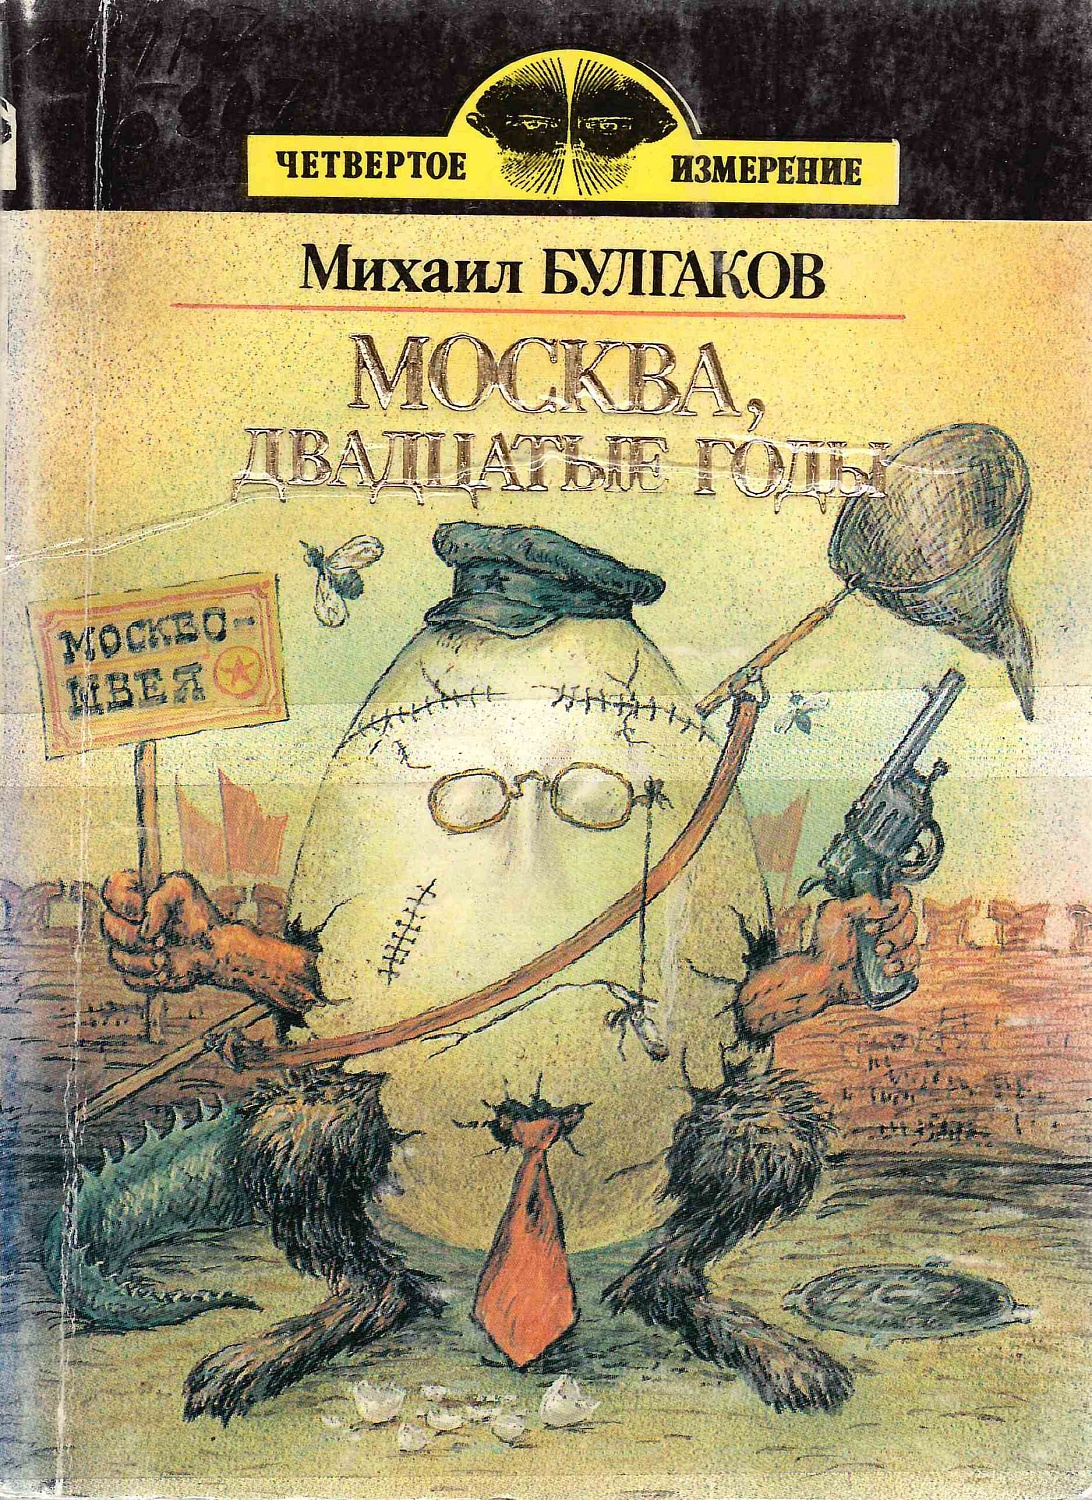 Книжная выставка «Пятое измерение»  – 130 лет со дня рождения Михаила Булгакова 